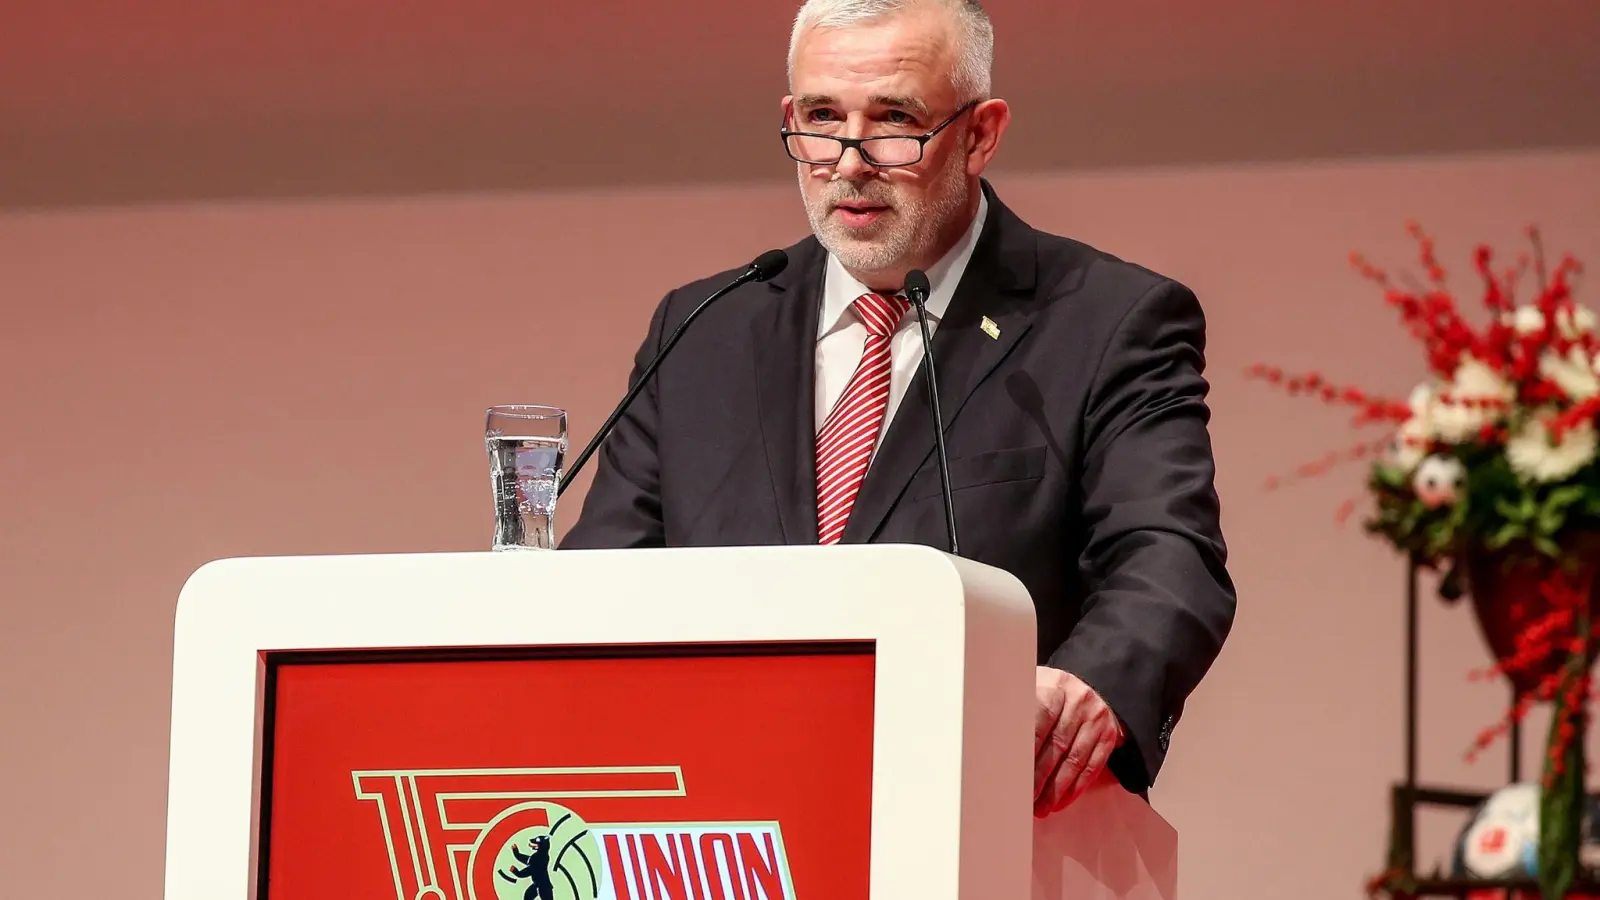 Unions Präsident Dirk Zingler sieht seinen Verein noch nicht am Ende der Entwicklung. (Foto: Andreas Gora/dpa/Archivbild)